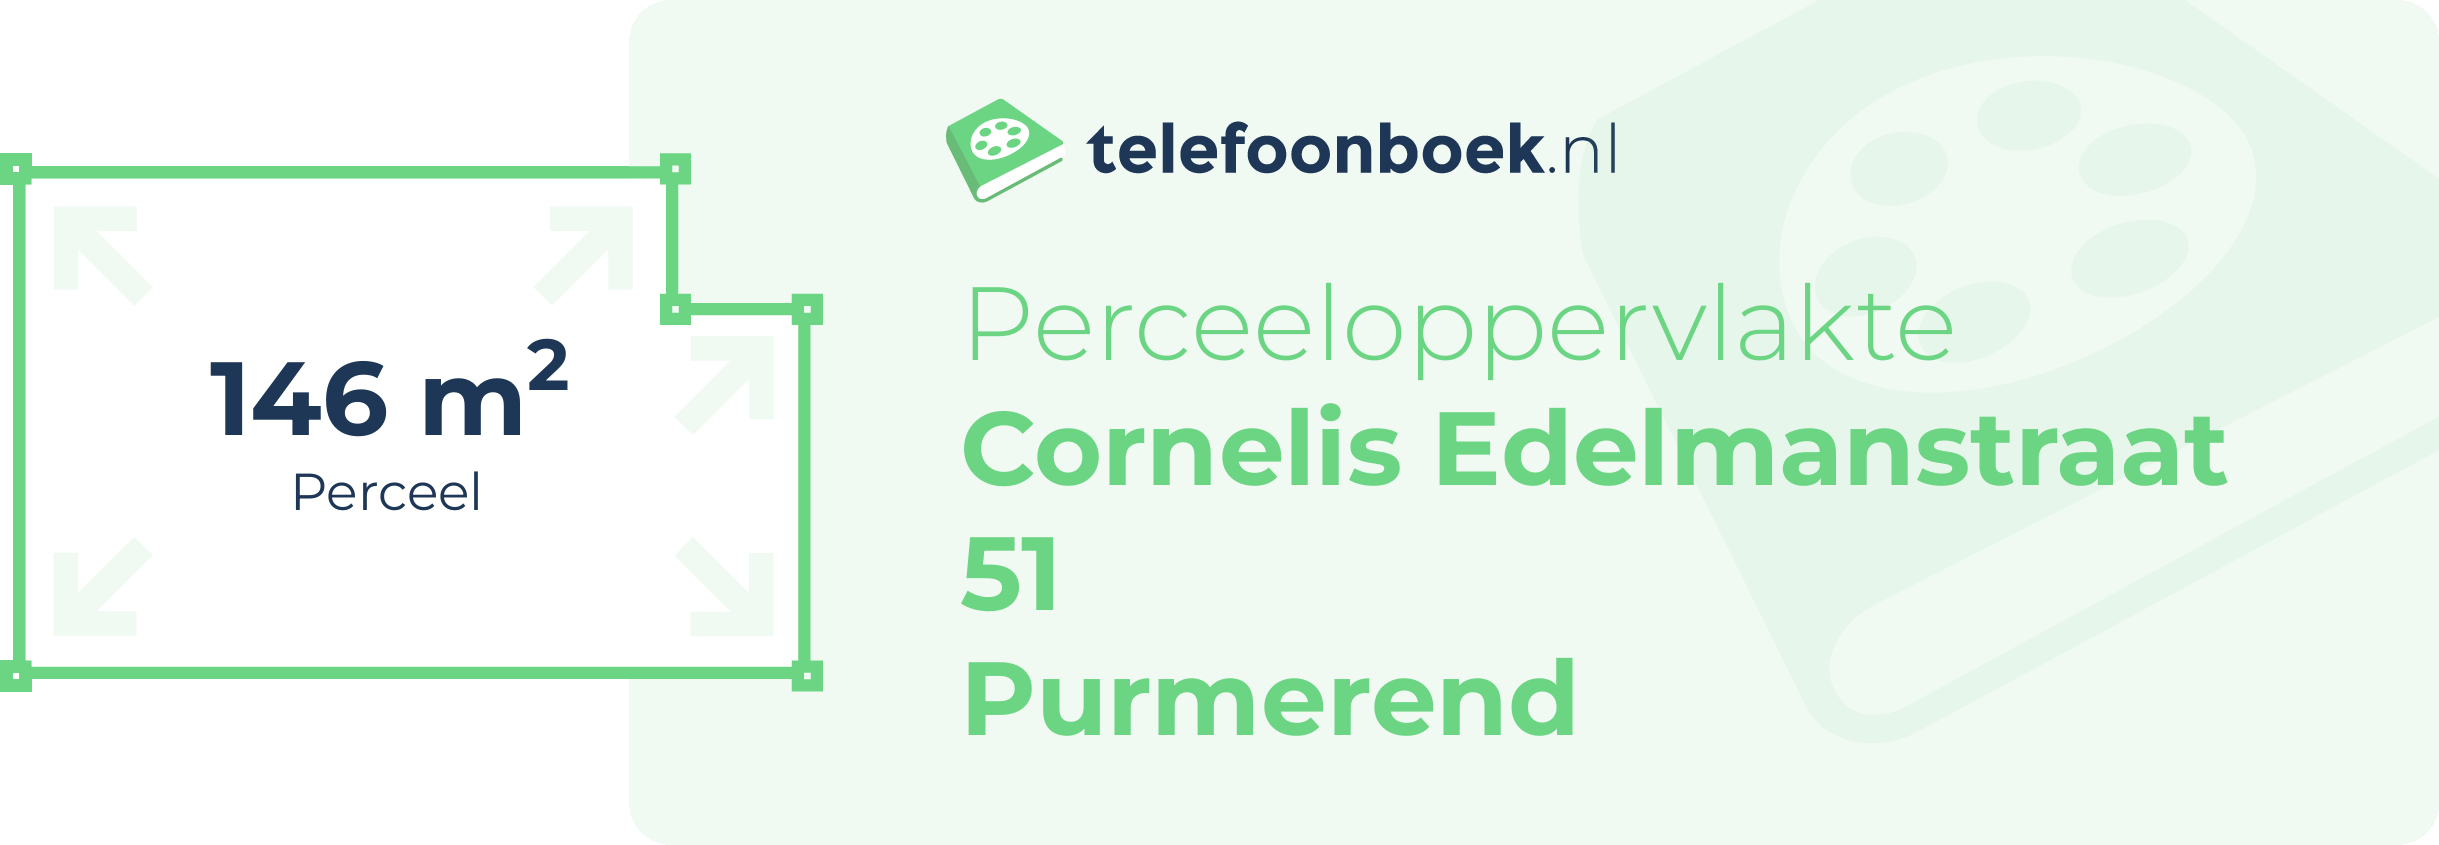 Perceeloppervlakte Cornelis Edelmanstraat 51 Purmerend